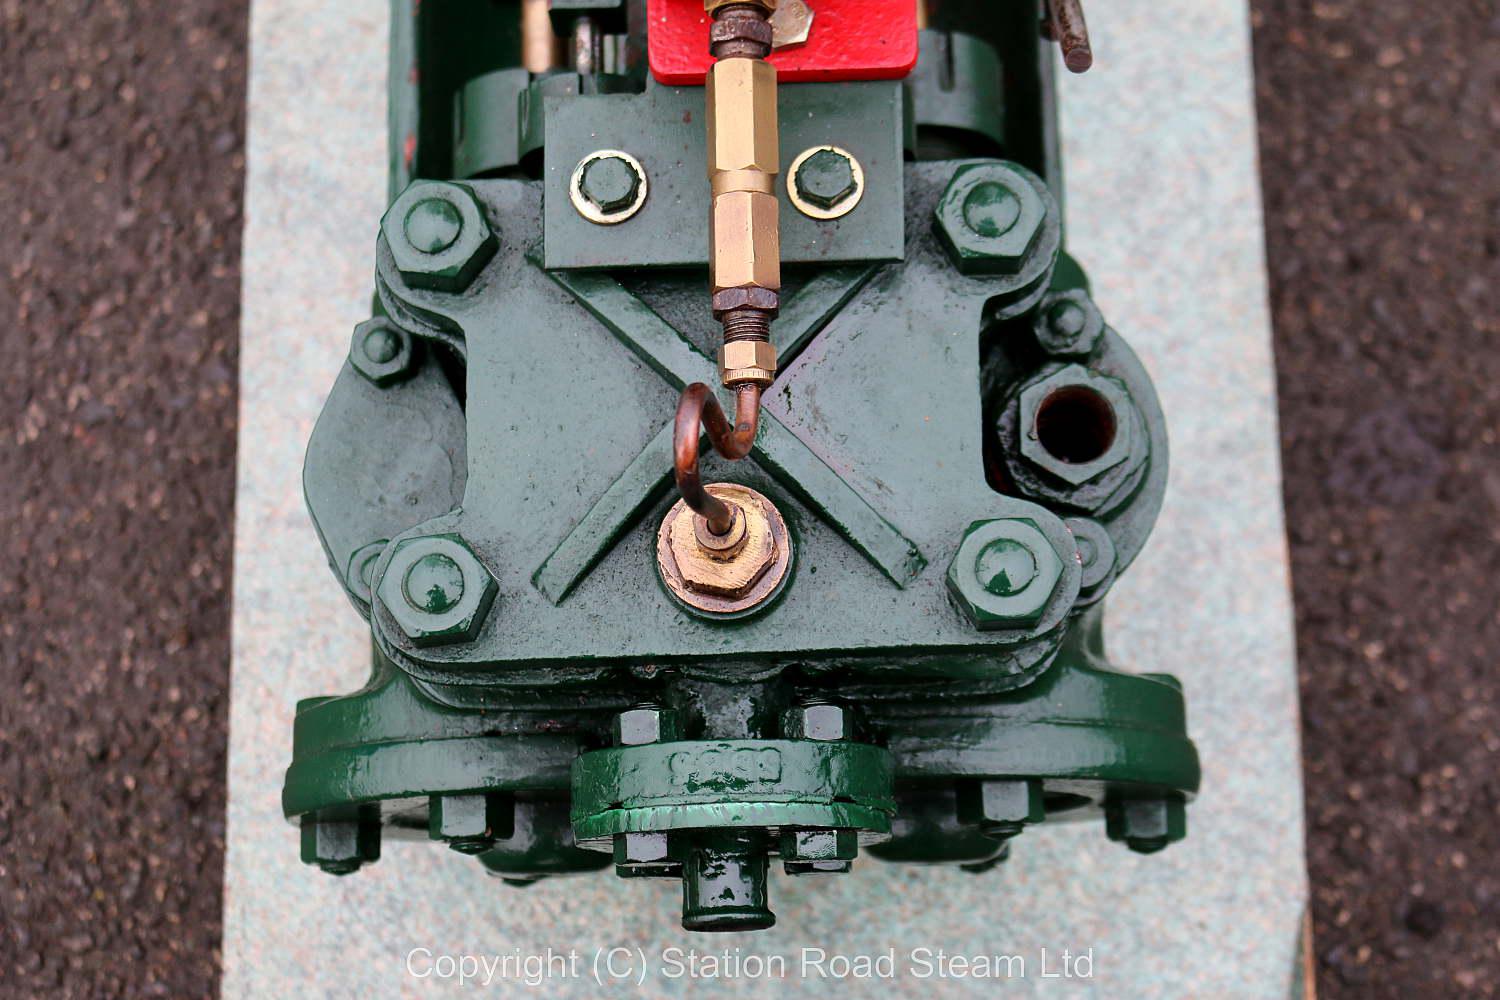 Hayward Tyler duplex steam pump with Manzel lubricator